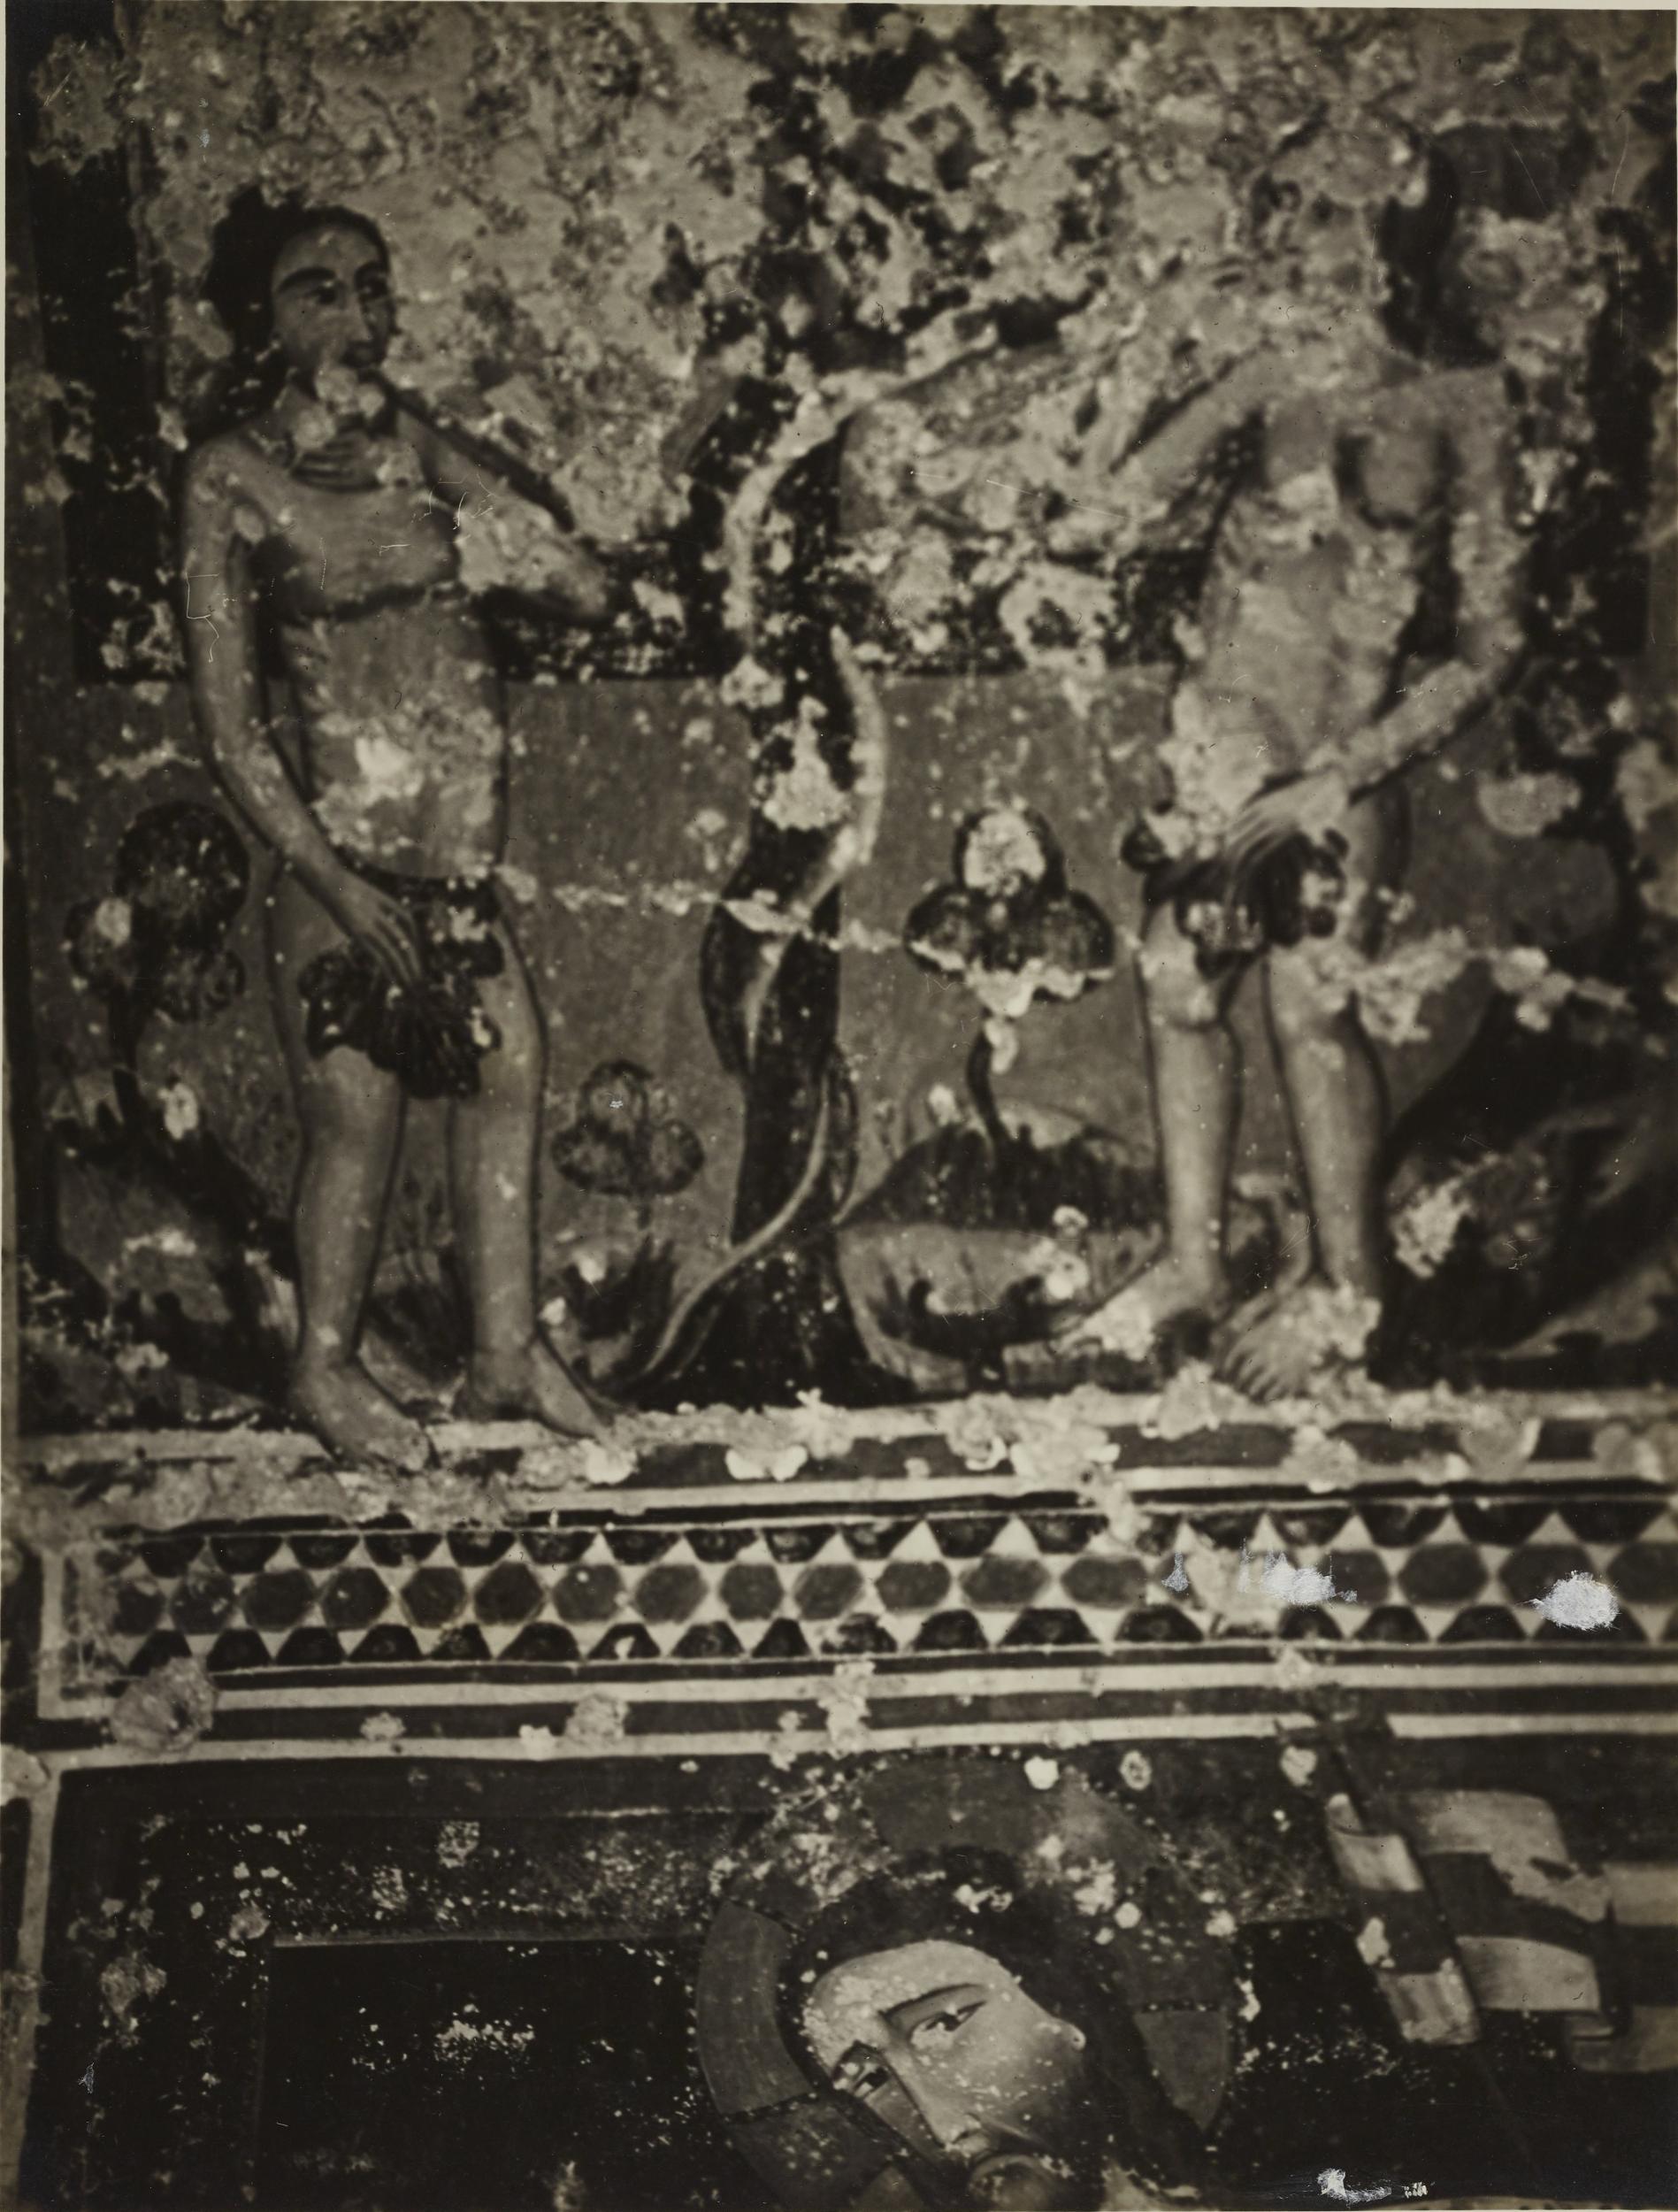 Fotografo non identificato, Andria - Chiesa di S. Croce, cripta, Adamo ed Eva, 1926-1950, gelatina ai sali d'argento/carta, MPI131863